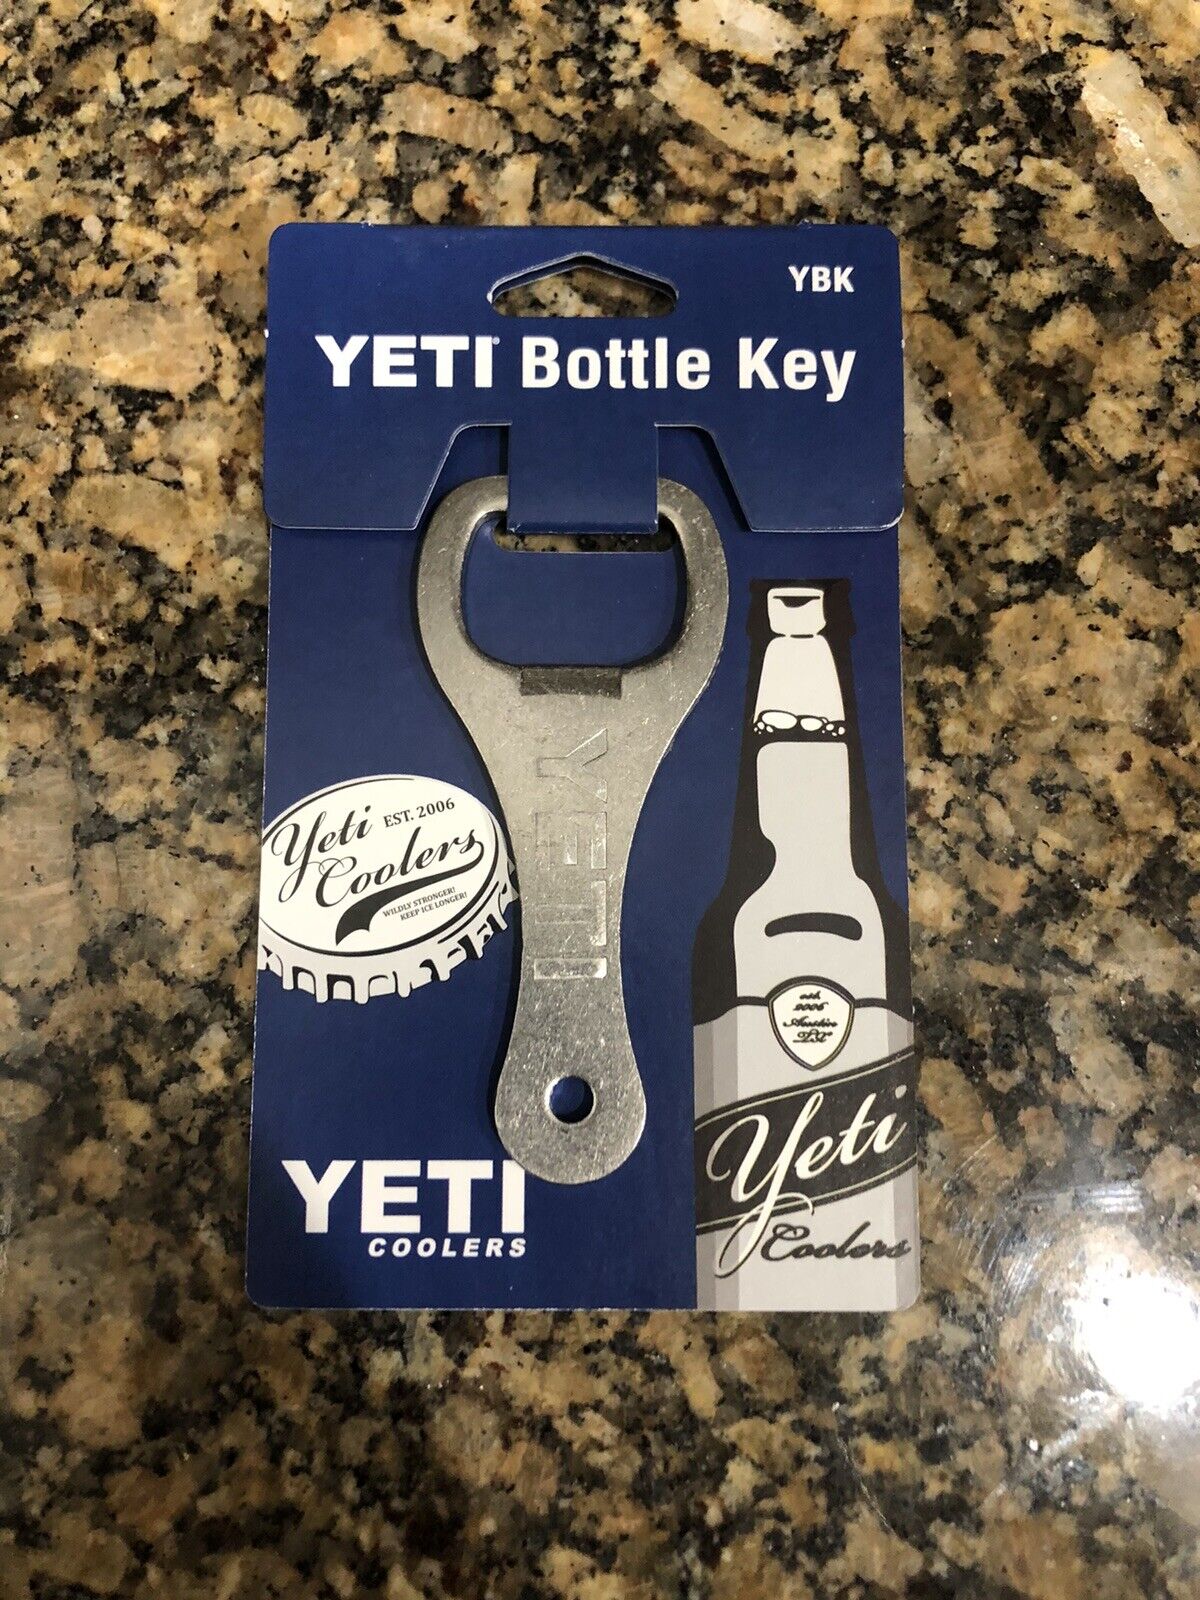 YETI Stainless Steel Bottle Key Bottle Opener YBK (Brand New)